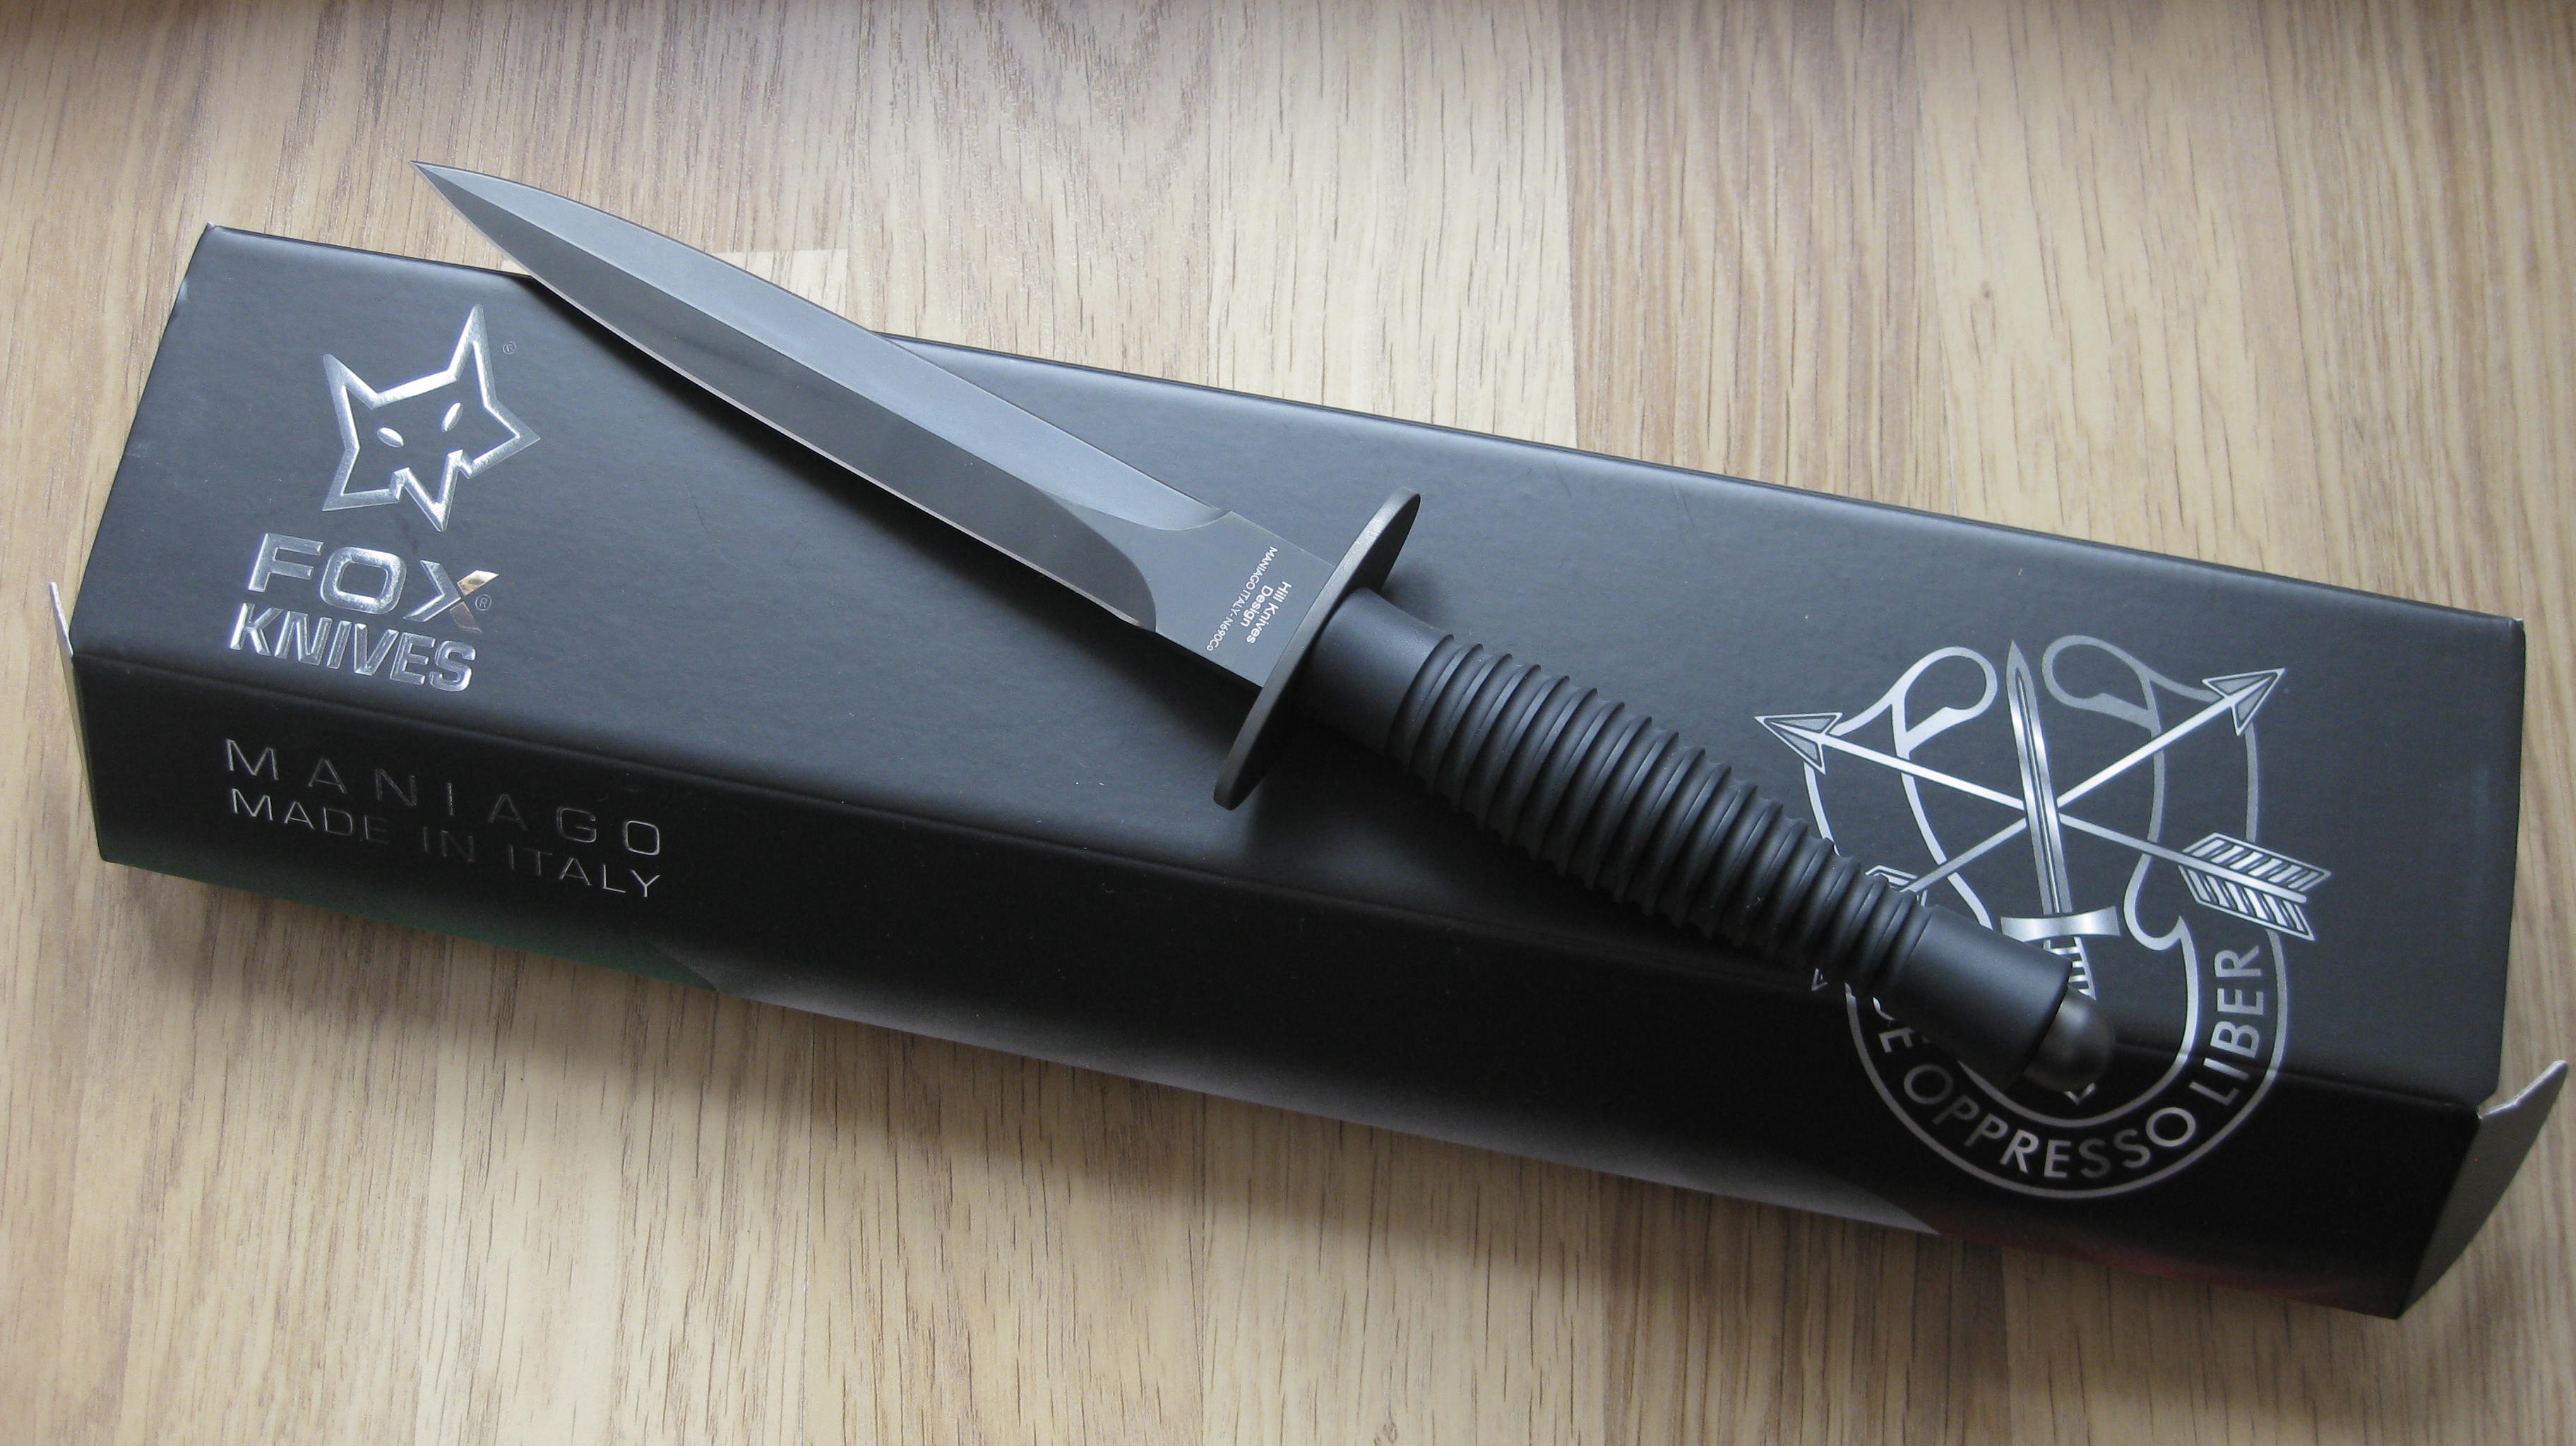 Stiletto FOX FX-592 Dagger Commando Fairbairn Sykes fighting knife